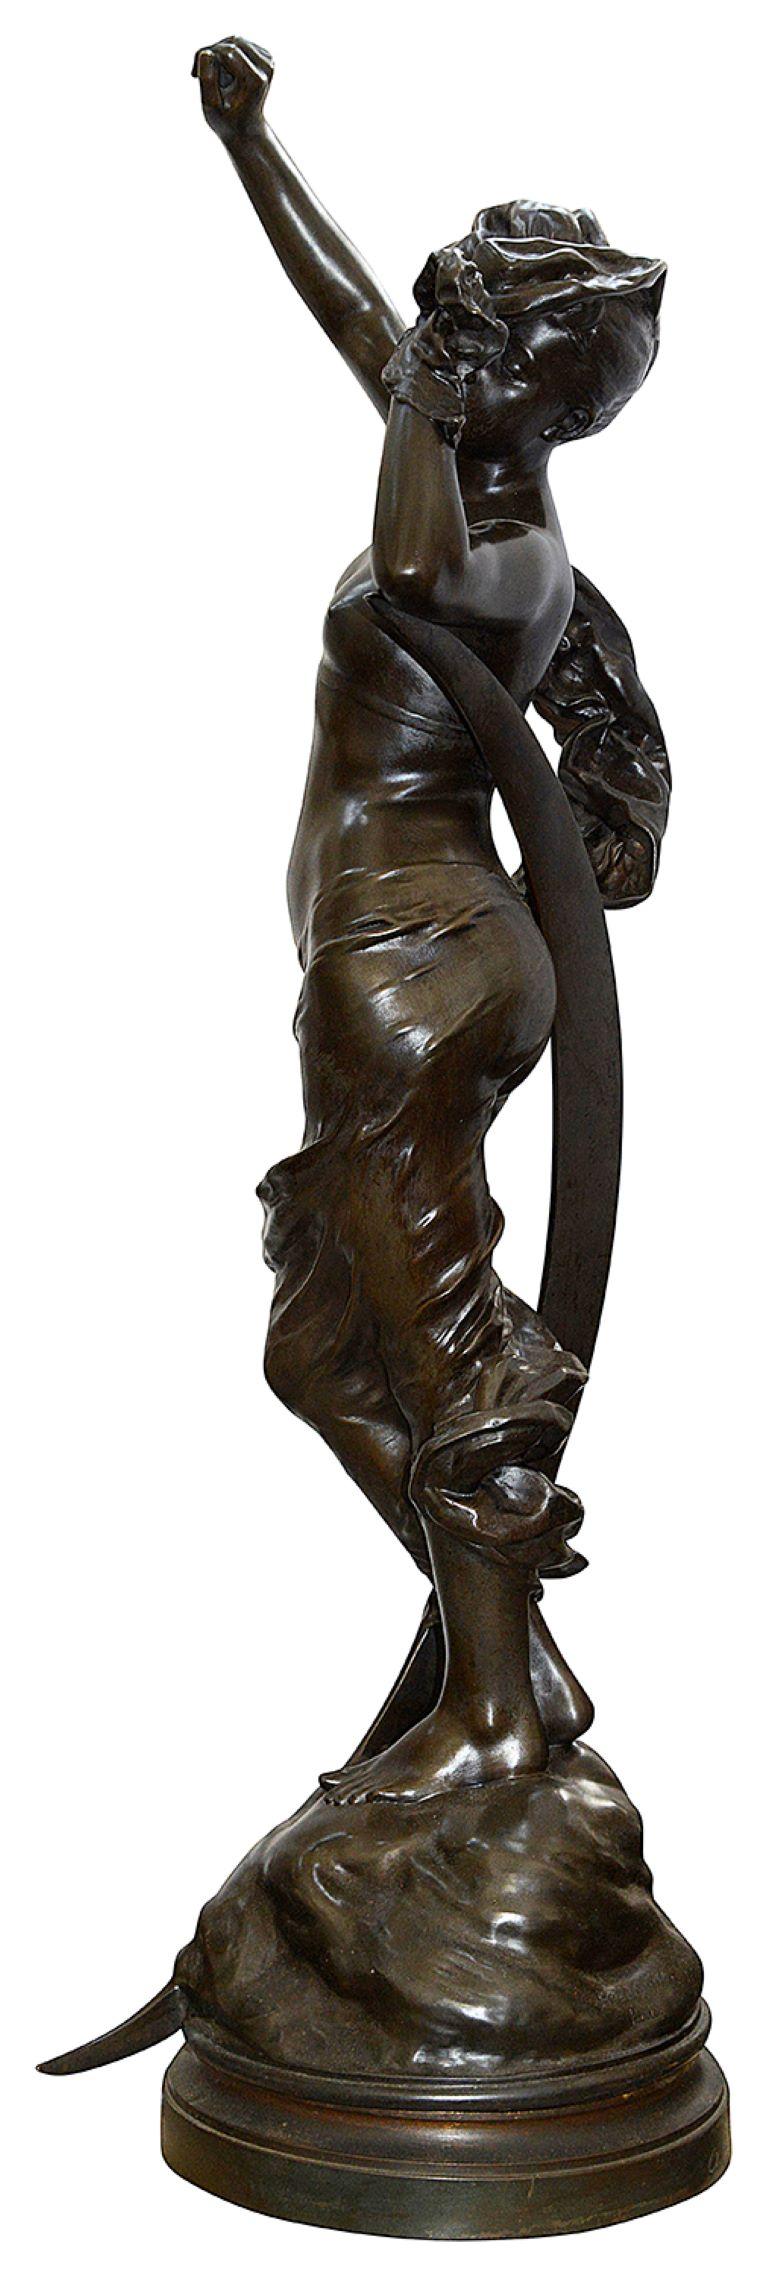 Eine Bronzestatue von sehr guter Qualität aus dem späten 19. Jahrhundert, die eine halb bekleidete Jungfrau mit ausgestreckten Armen vor der Mondsichel zeigt.
Gezeichnet; Henri Houdebine. Henri Houdebine gründete sein Unternehmen im Jahr 1845. Er